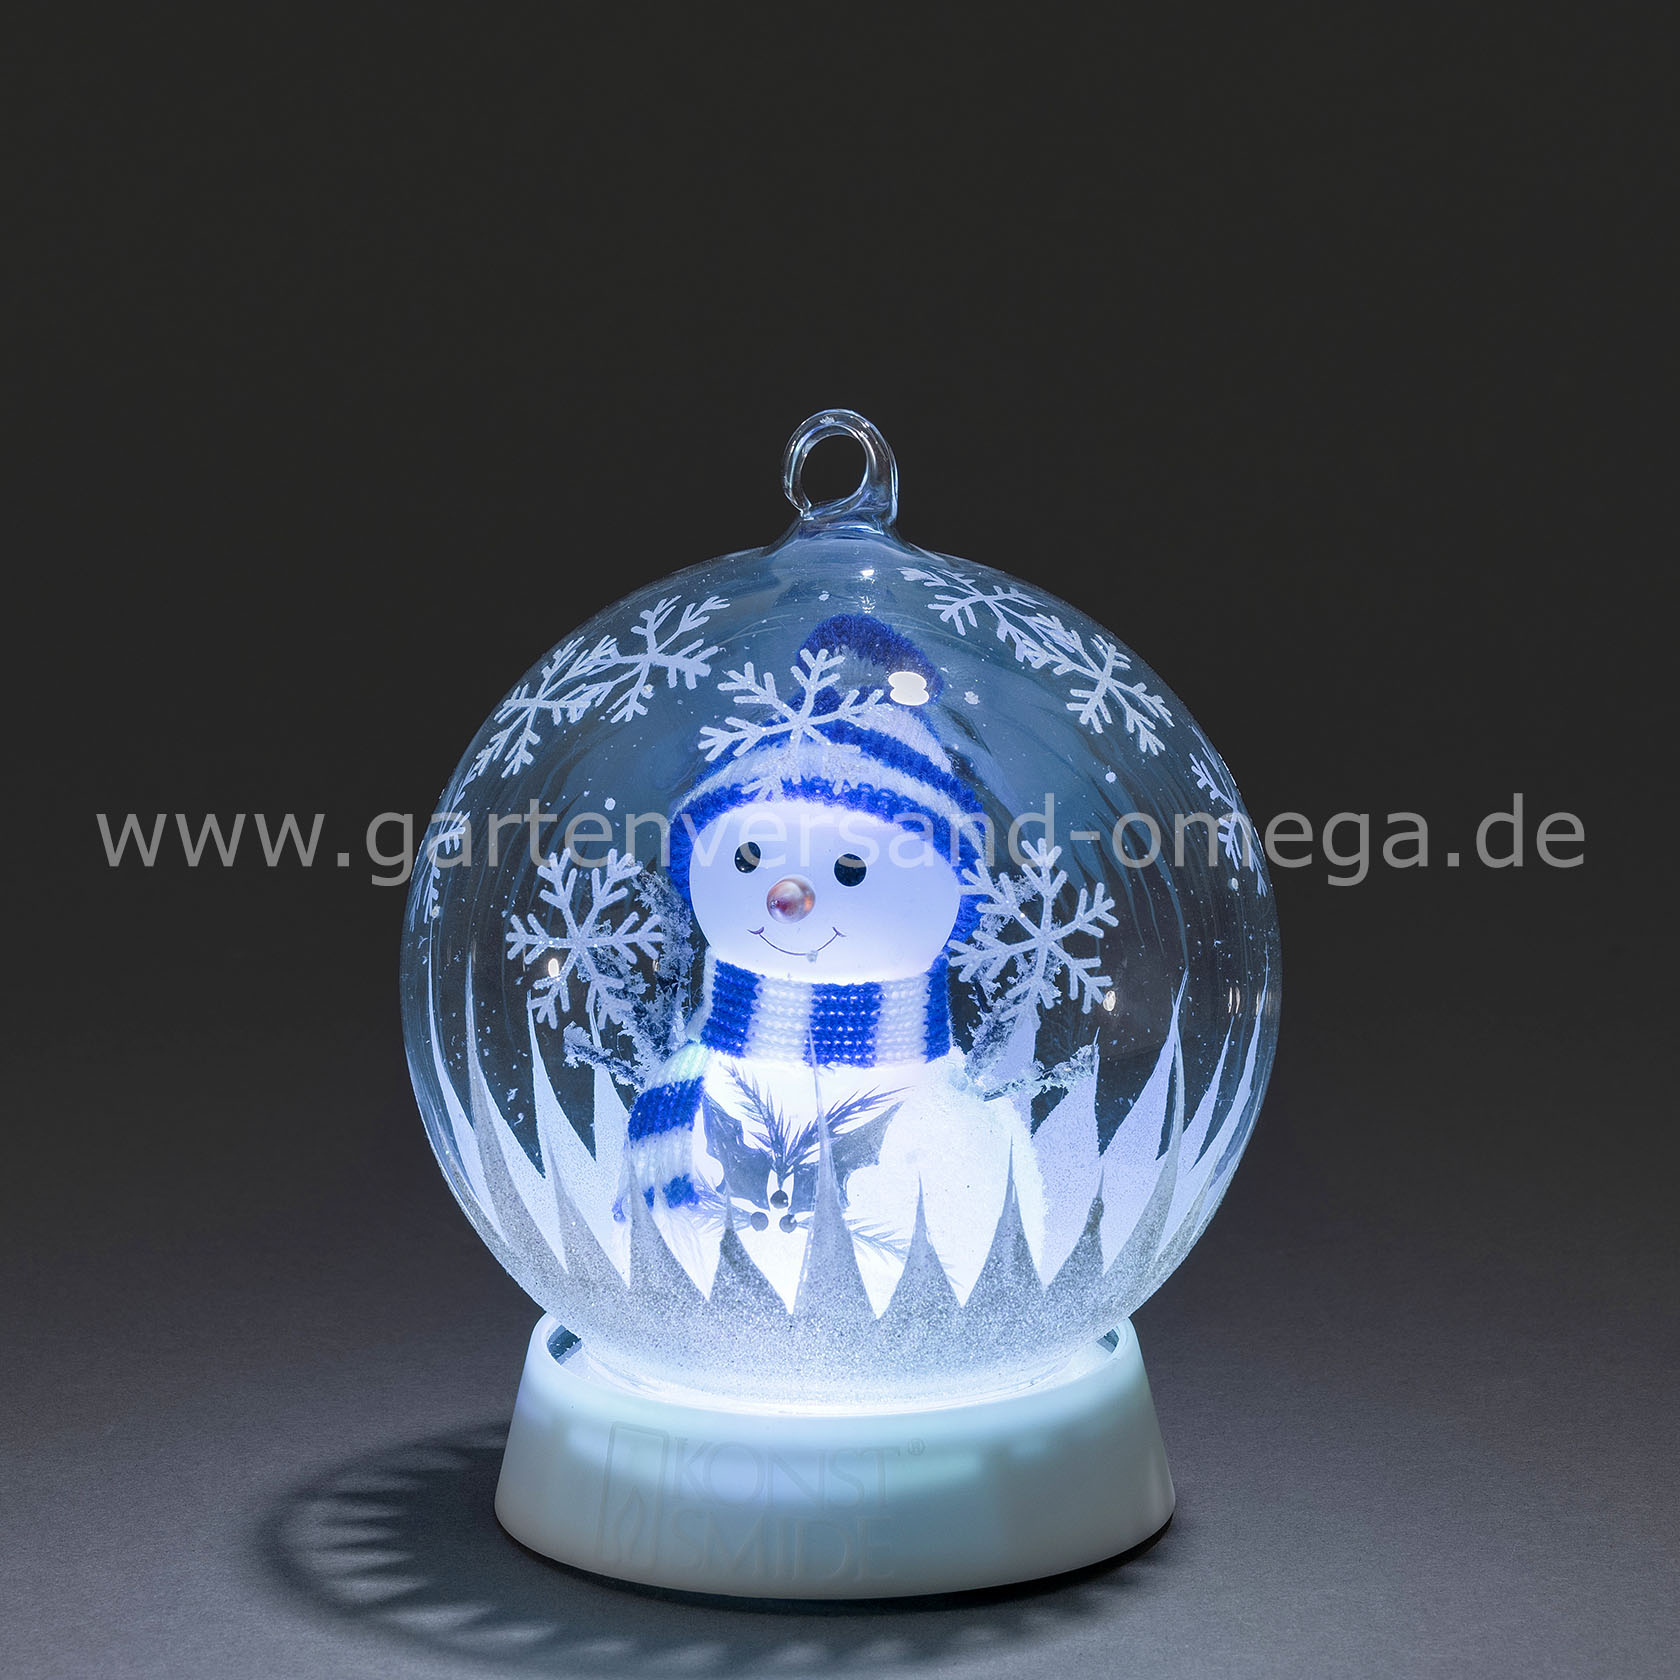 FengRise Weihnachtsdekoration LED Nachtlicht Santa Claus Projektor Lichter mit 4 Farben drehbares Muster Schneemann Weihnachtsbaum Schneeflocke Glocke für Weihnachtsschmuck 